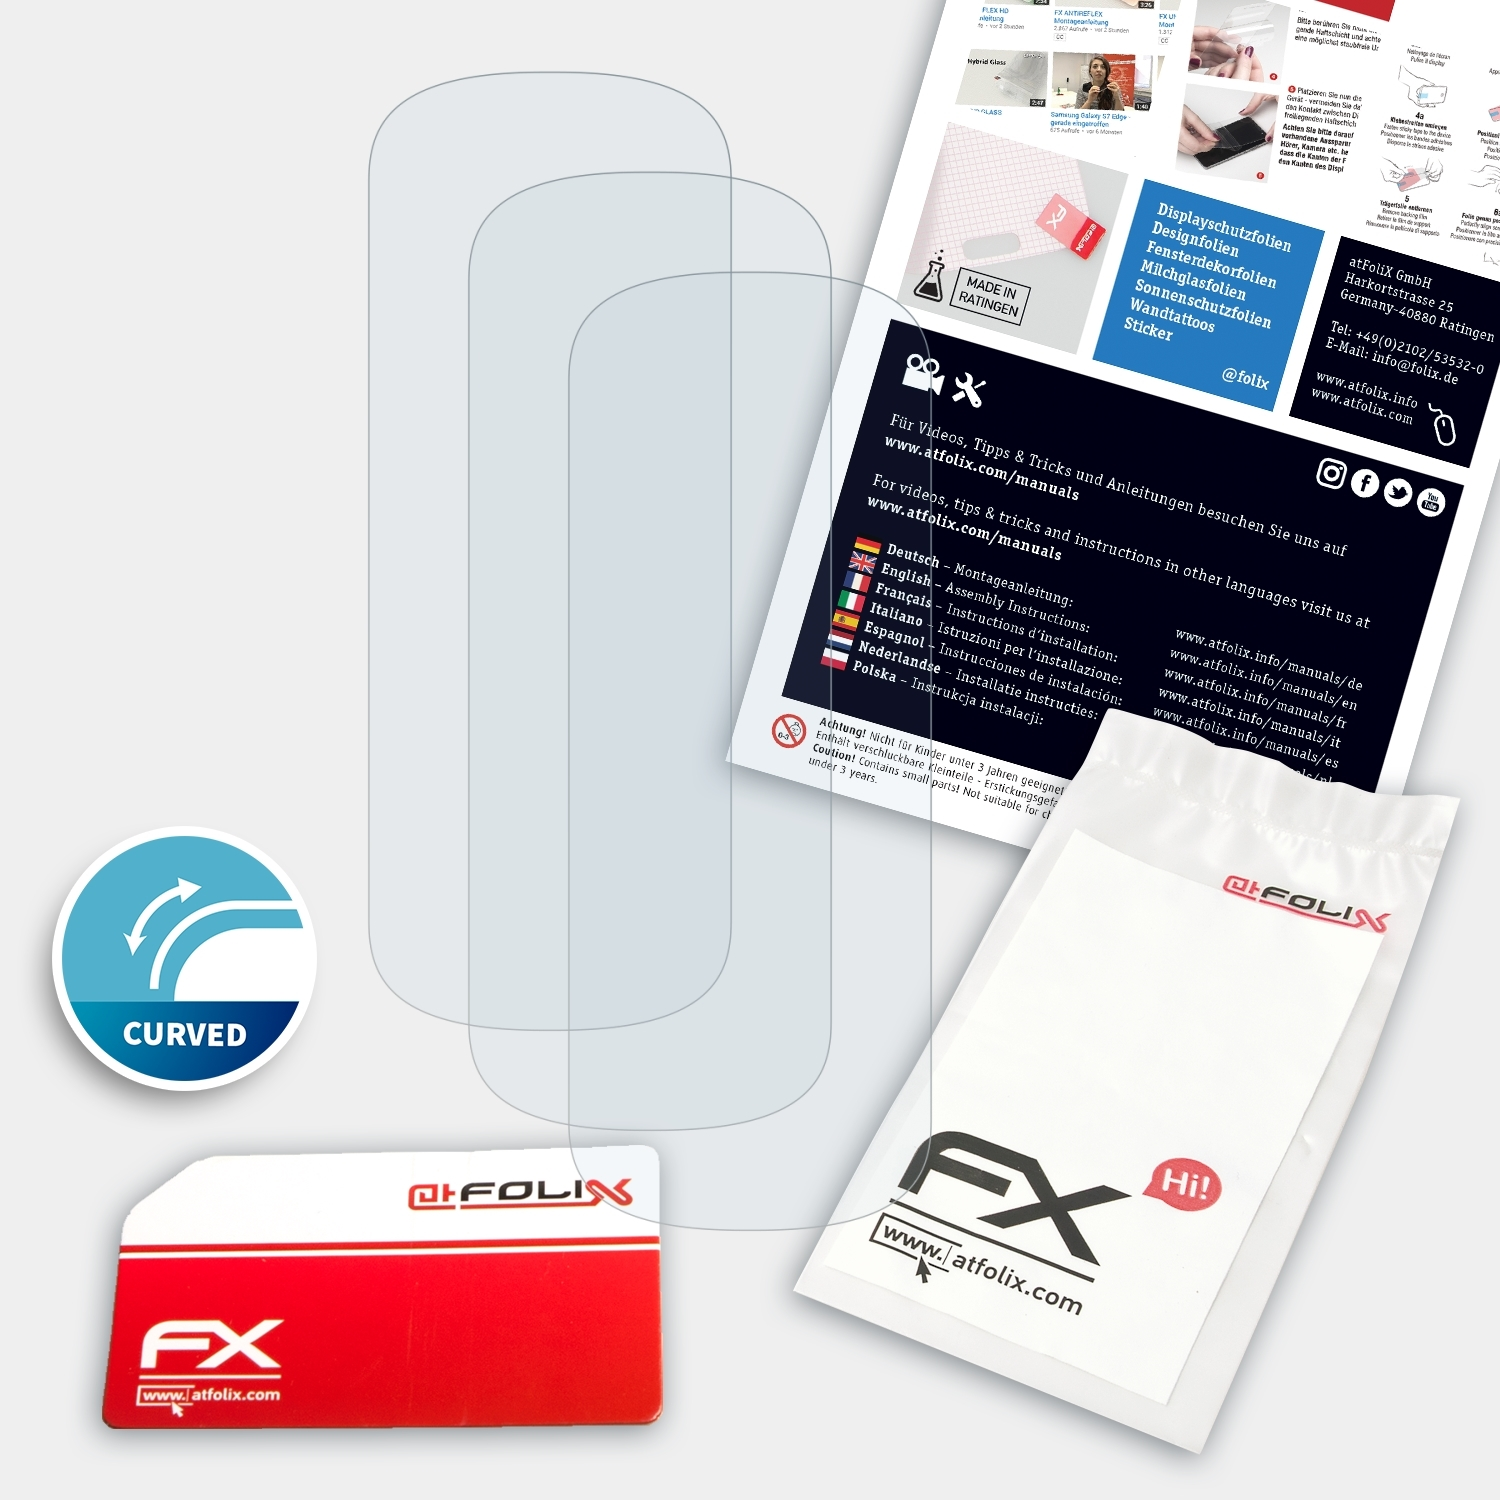 FX-ActiFleX Displayschutz(für Fit2) ATFOLIX 3x Samsung Galaxy